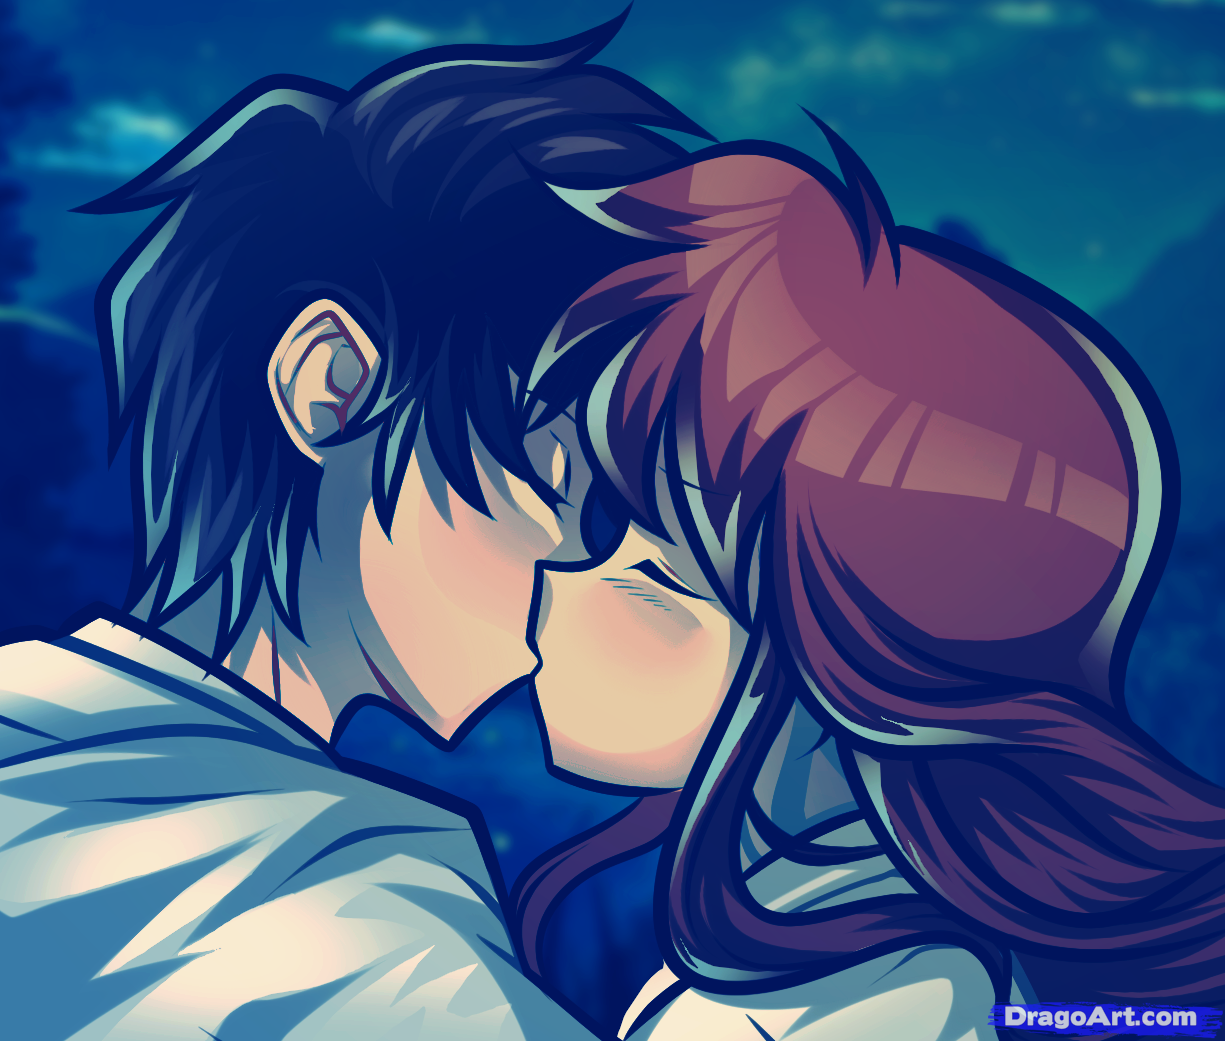 Cute Anime Kiss